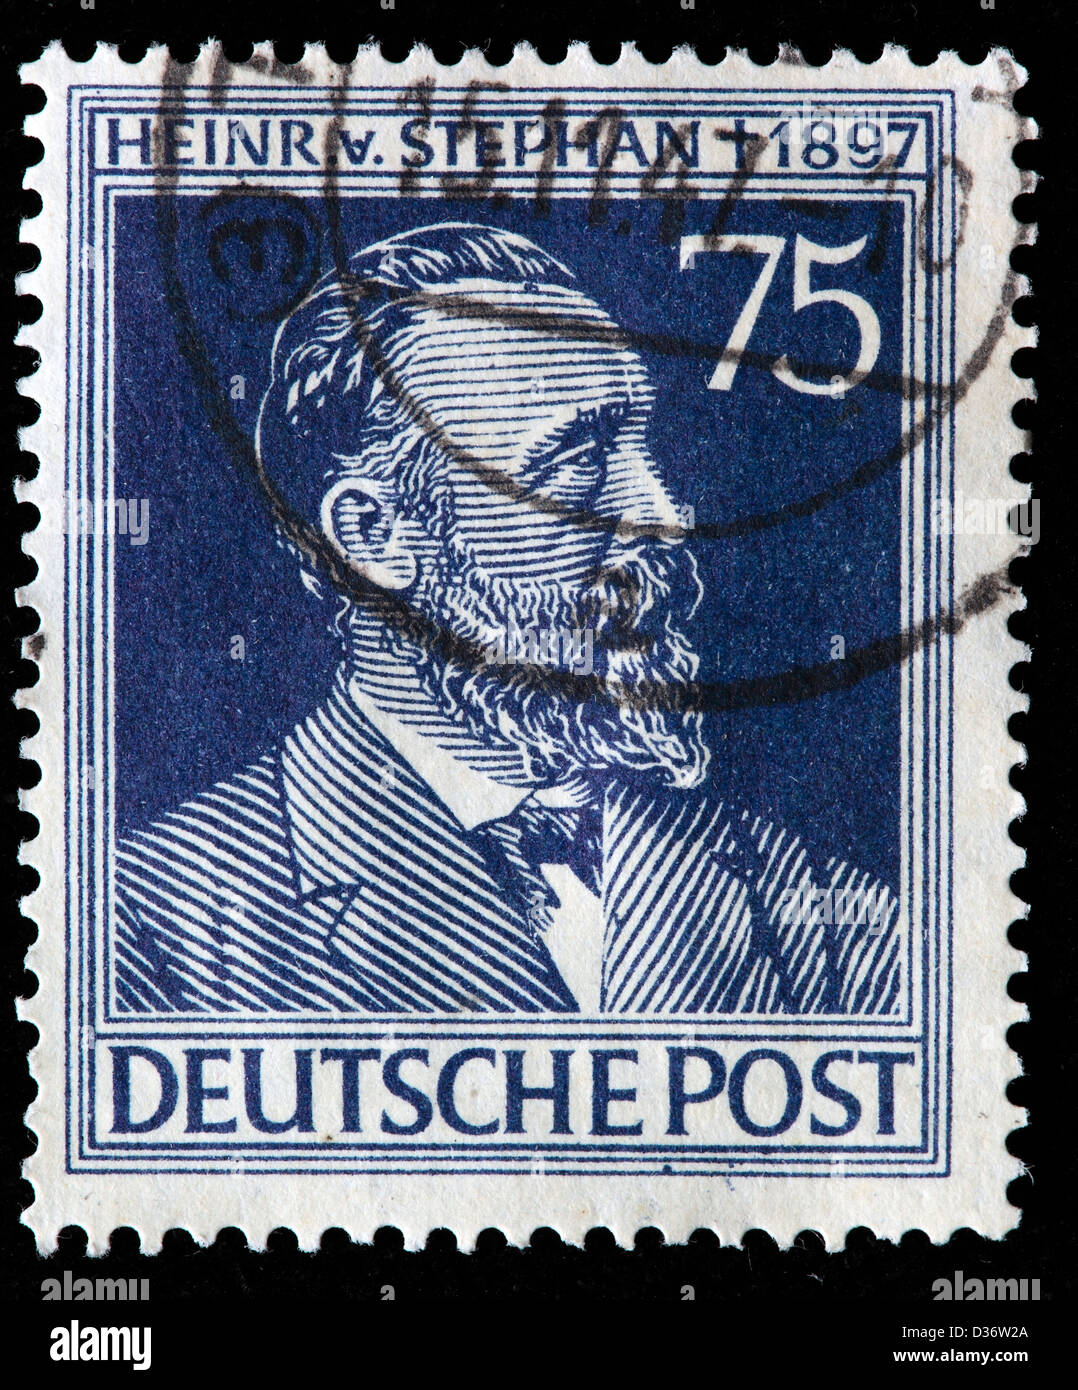 Heinrich VON STEPHAN, premier ministre des Postes de l'Empire allemand, timbre-poste, Allemagne, 1947 Banque D'Images